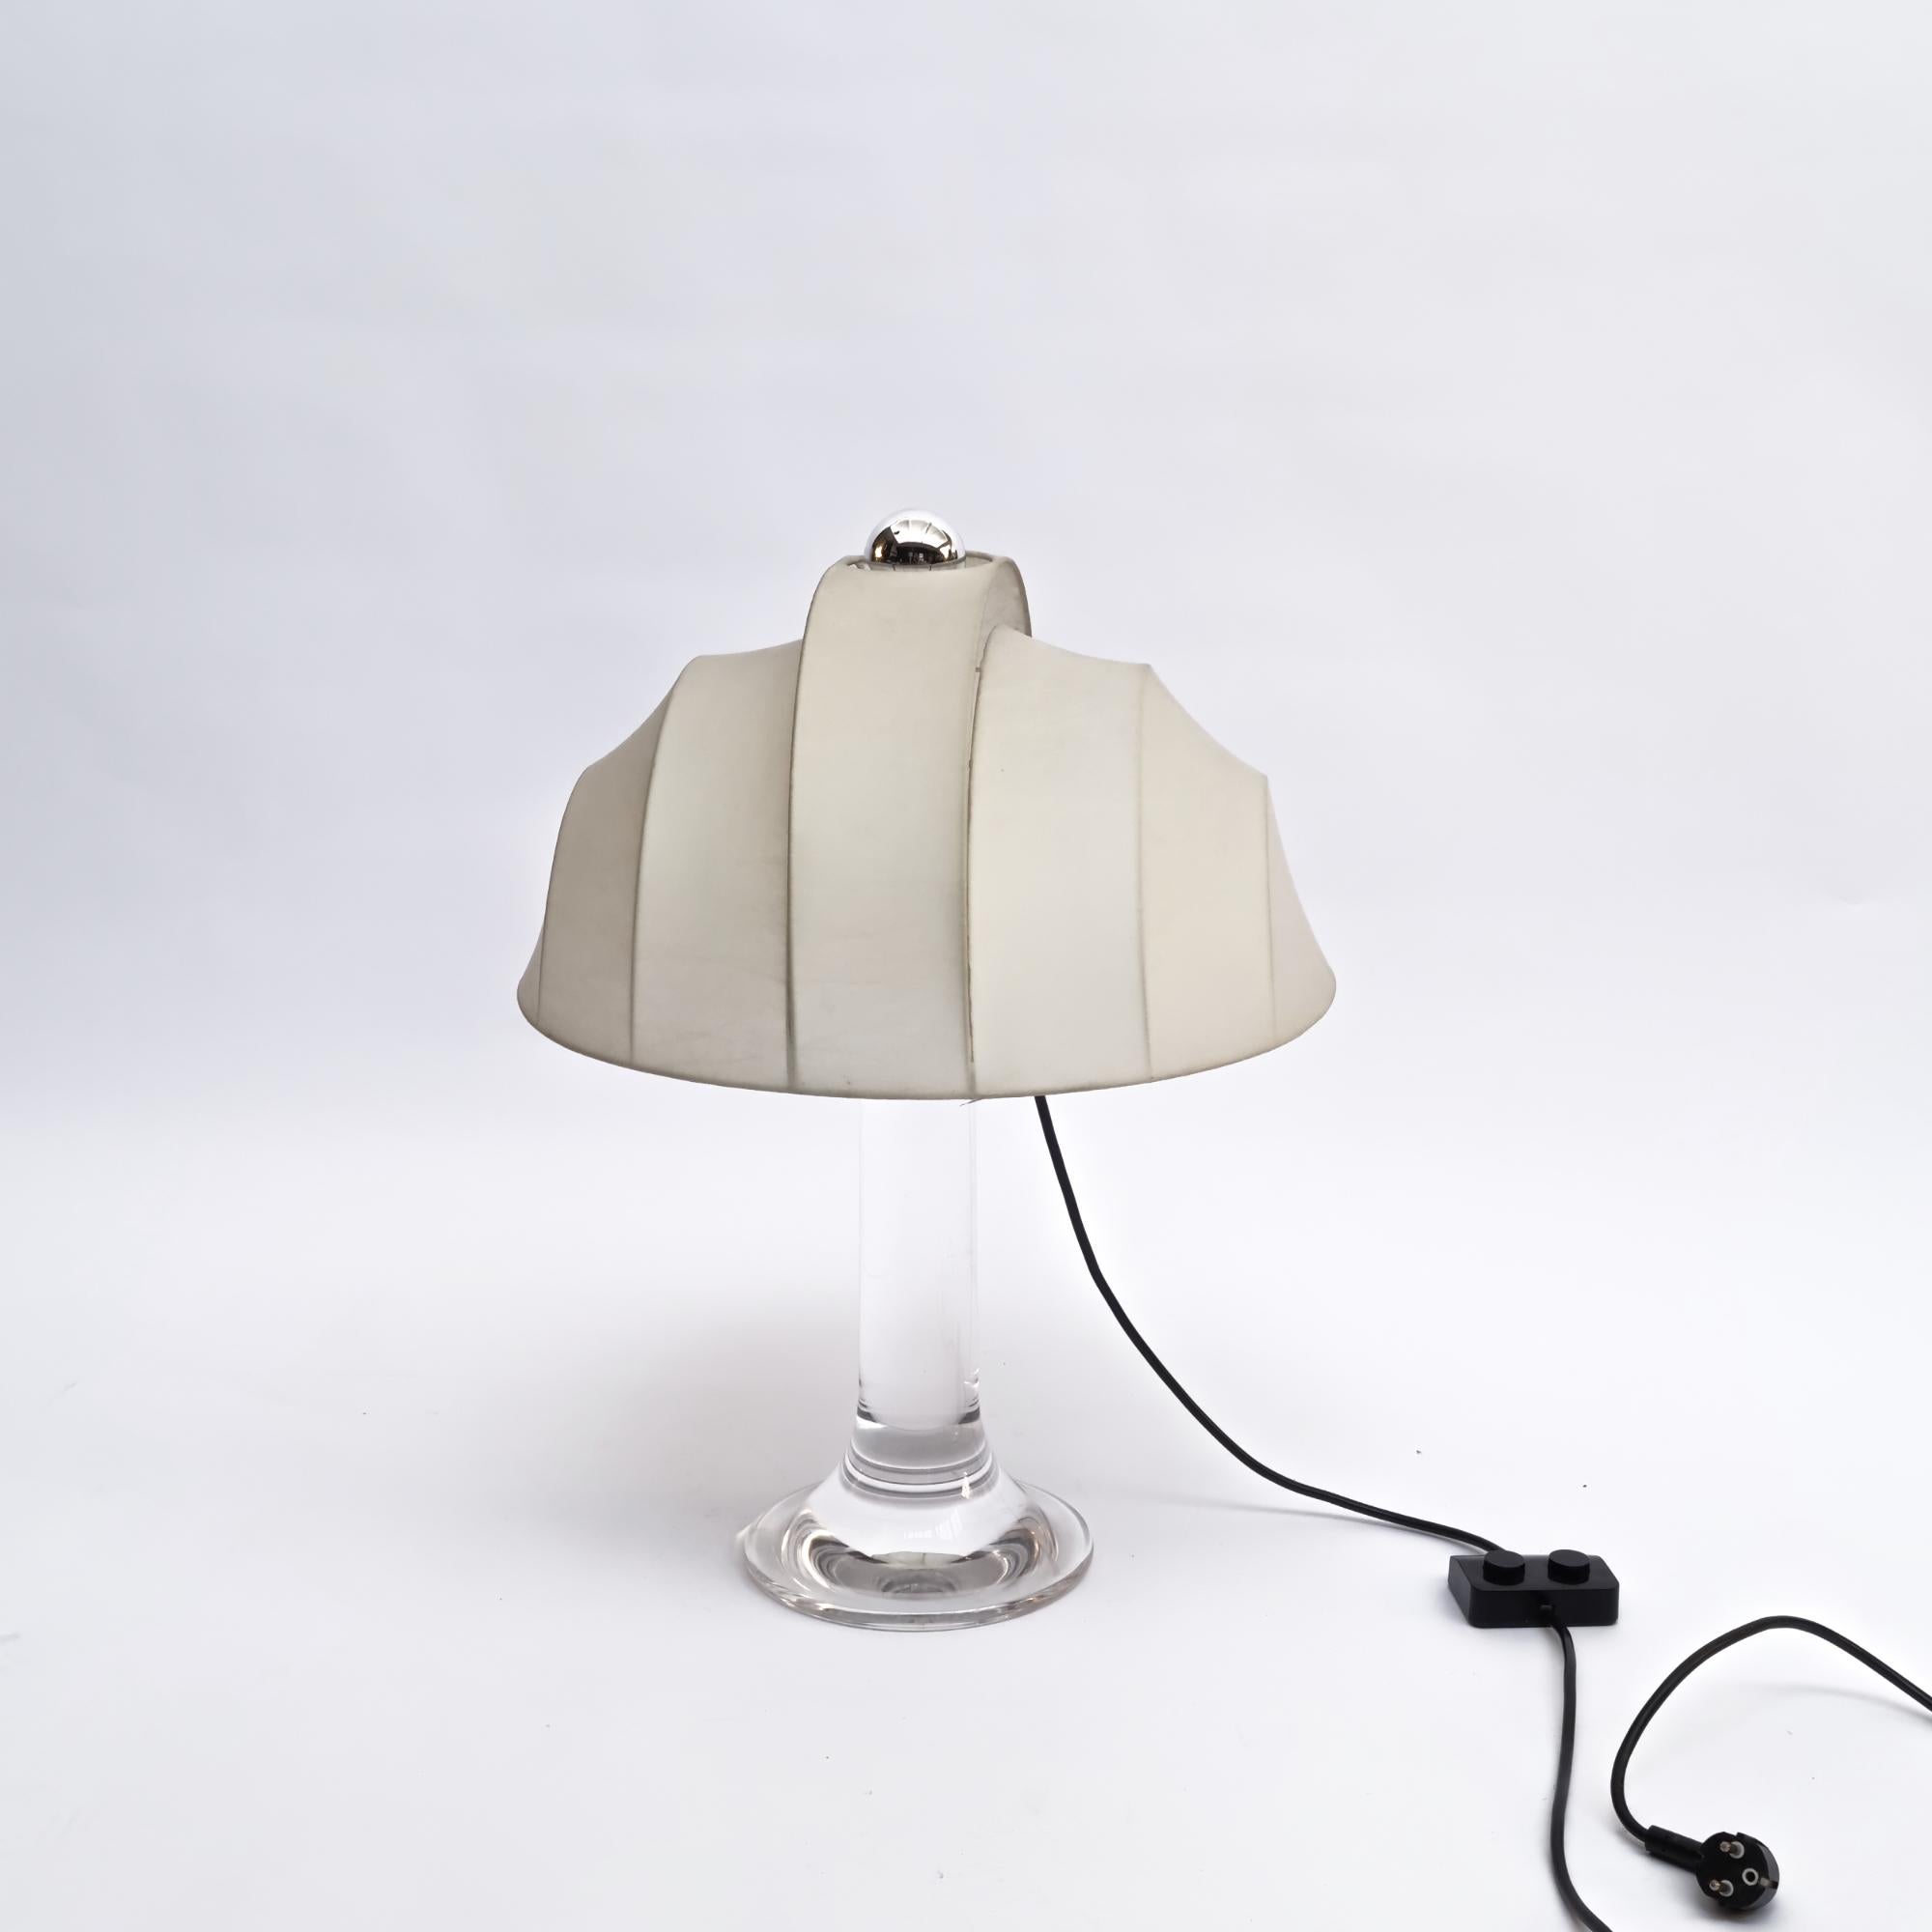 Original et rare lampe de table de Luigi Massoni pour Guzzini Harveiluce, années 1970.
MATERIAL : Base conique en acrylique clair, tube solide ou tige. Livré avec l'abat-jour d'origine !

3x E14 + 1x E27 Prise européenne (jusqu'à 250V).

Base : H60